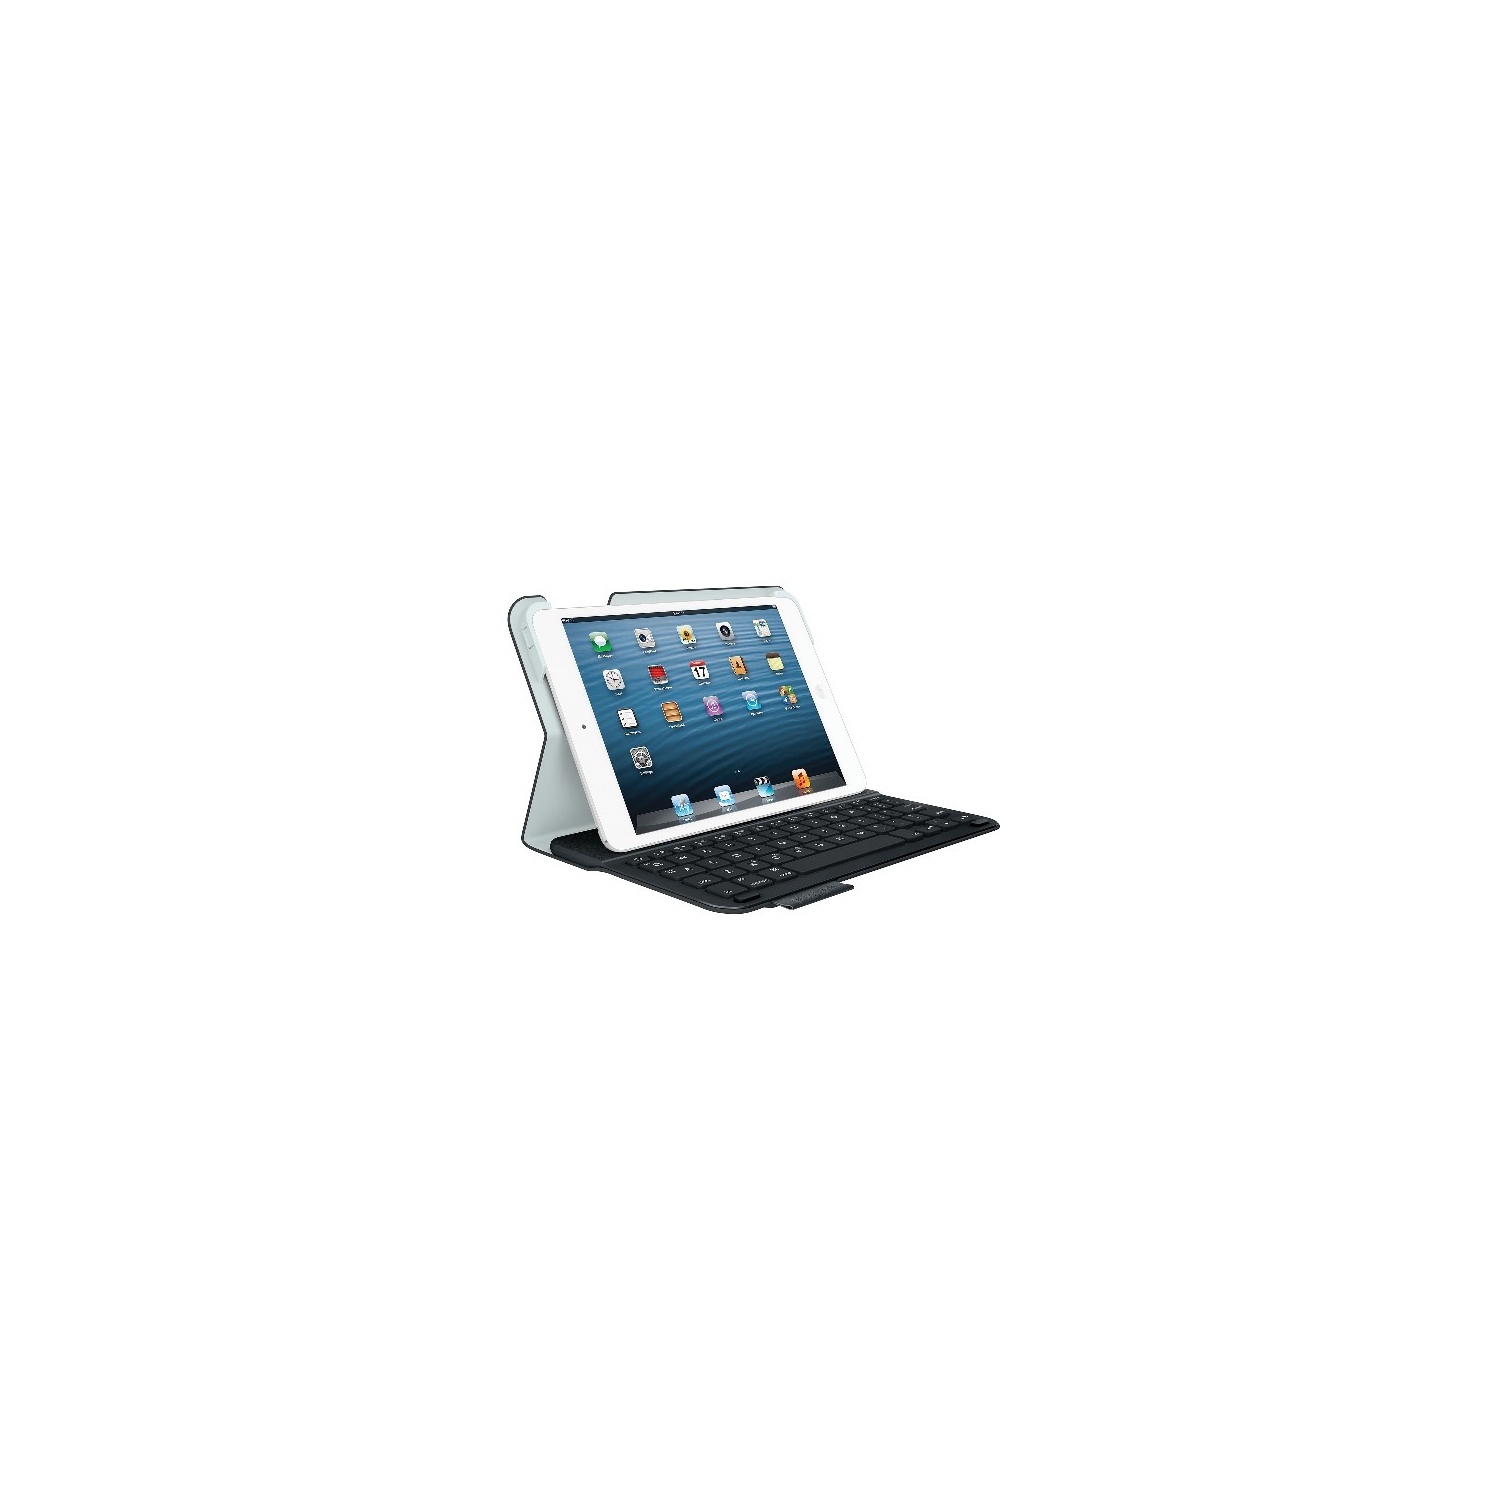 Open Box - Logitech Ultrathin iPad Mini 1 Keyboard Case (920-005893) - Carbon Black